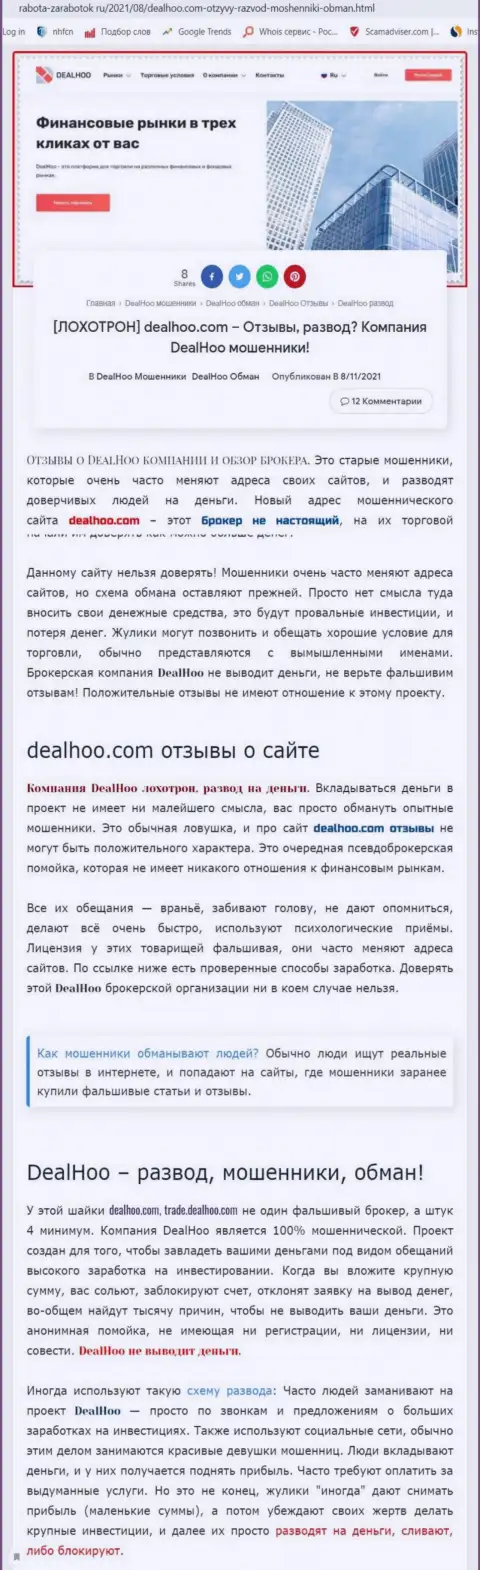 DealHoo - это МОШЕННИКИ !!! Обзор мошеннических действий организации и комментарии пострадавших